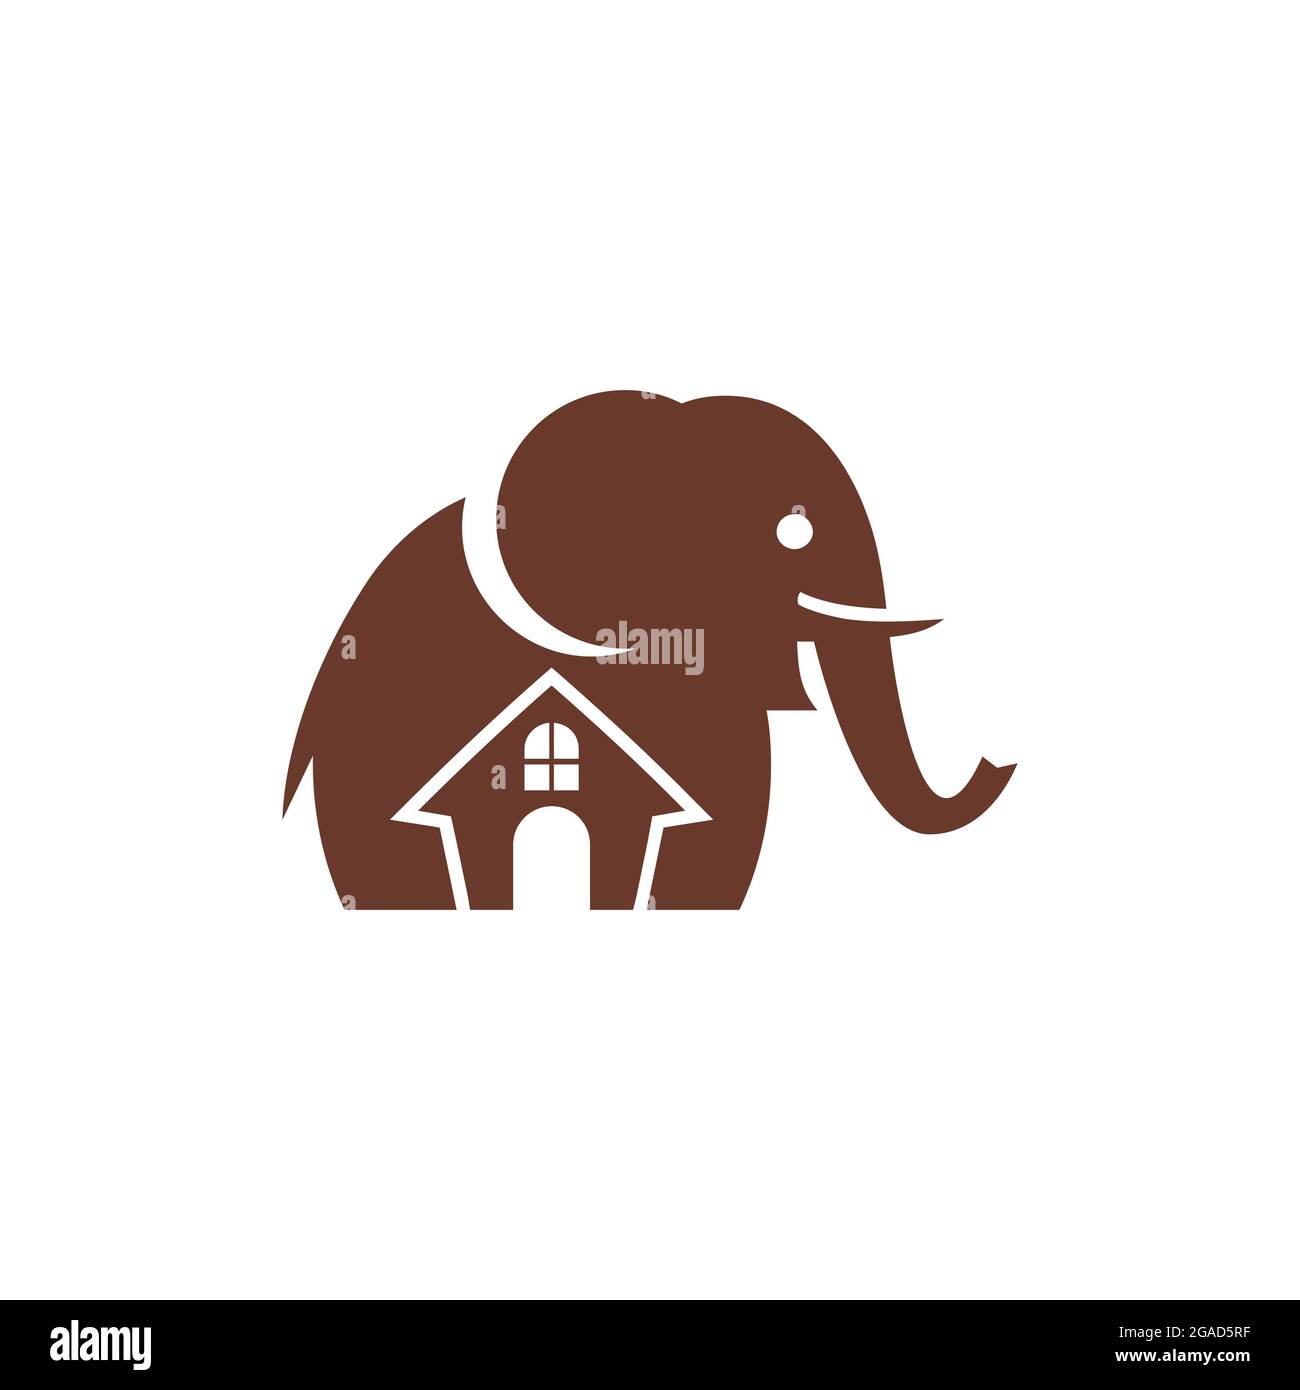 home house residence elephant logo icon flat vector concept design Stock Vector